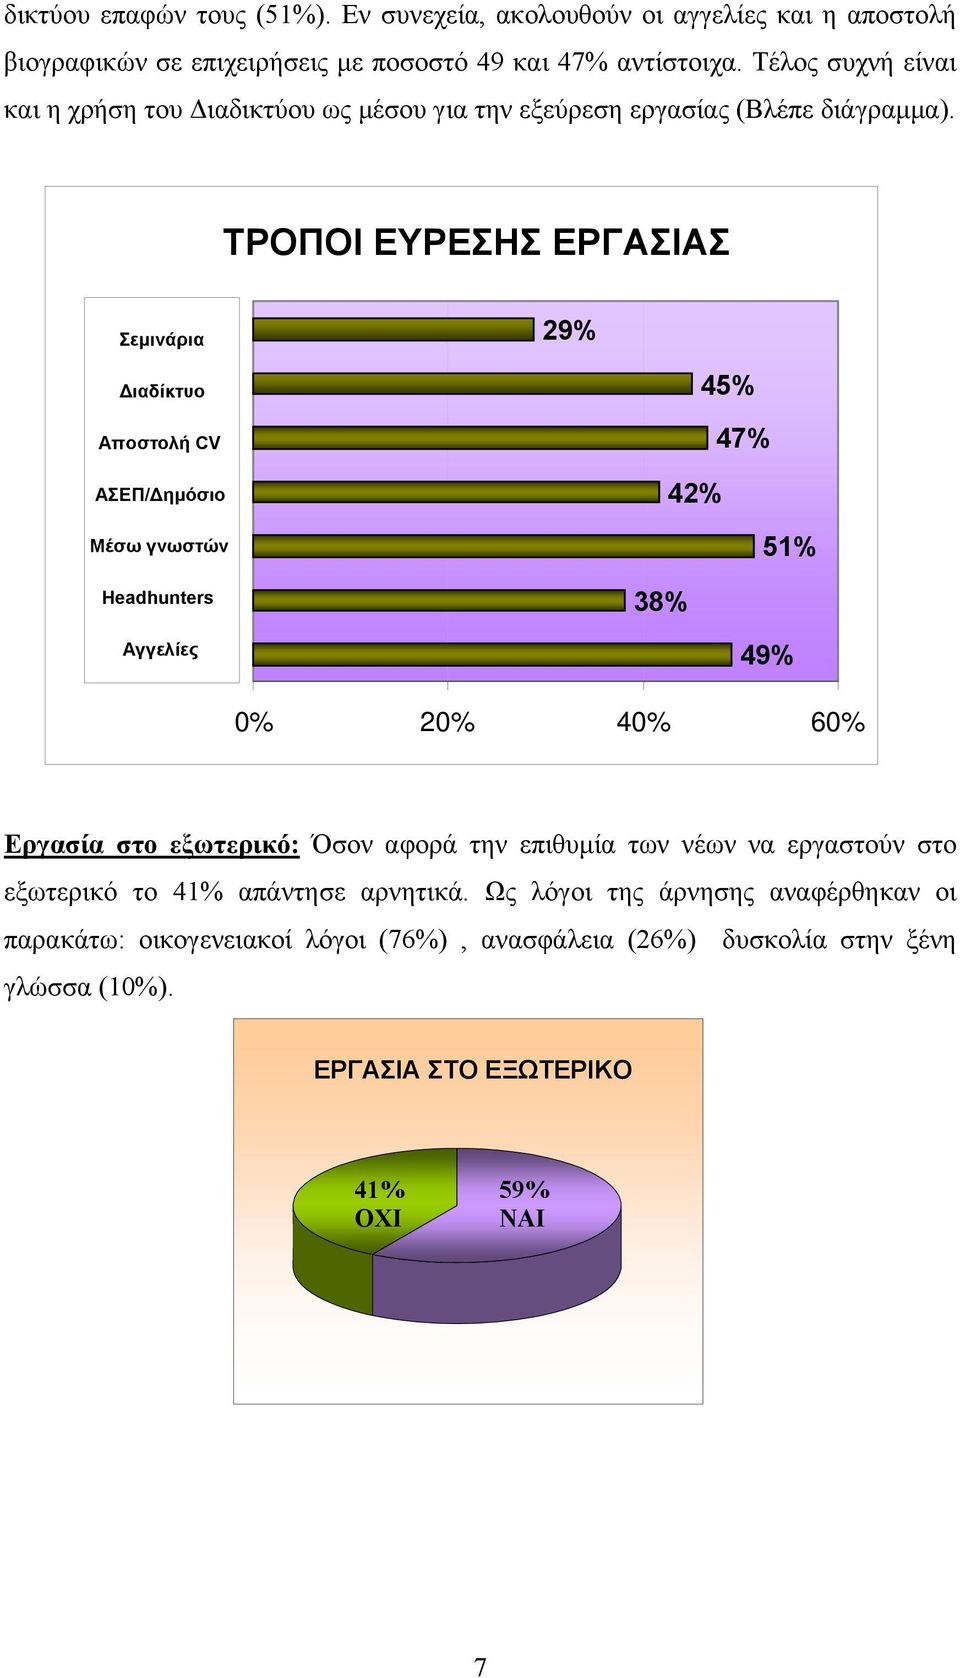 ΤΡΟΠΟΙ ΕΥΡΕΣΗΣ ΕΡΓΑΣΙΑΣ Σεμινάρια Διαδίκτυο Αποστολή CV ΑΣΕΠ/Δημόσιο Μέσω γνωστών Headhunters Αγγελίες 29% 45% 47% 42% 51% 38% 49% 2 4 6 Εργασία στο εξωτερικό: